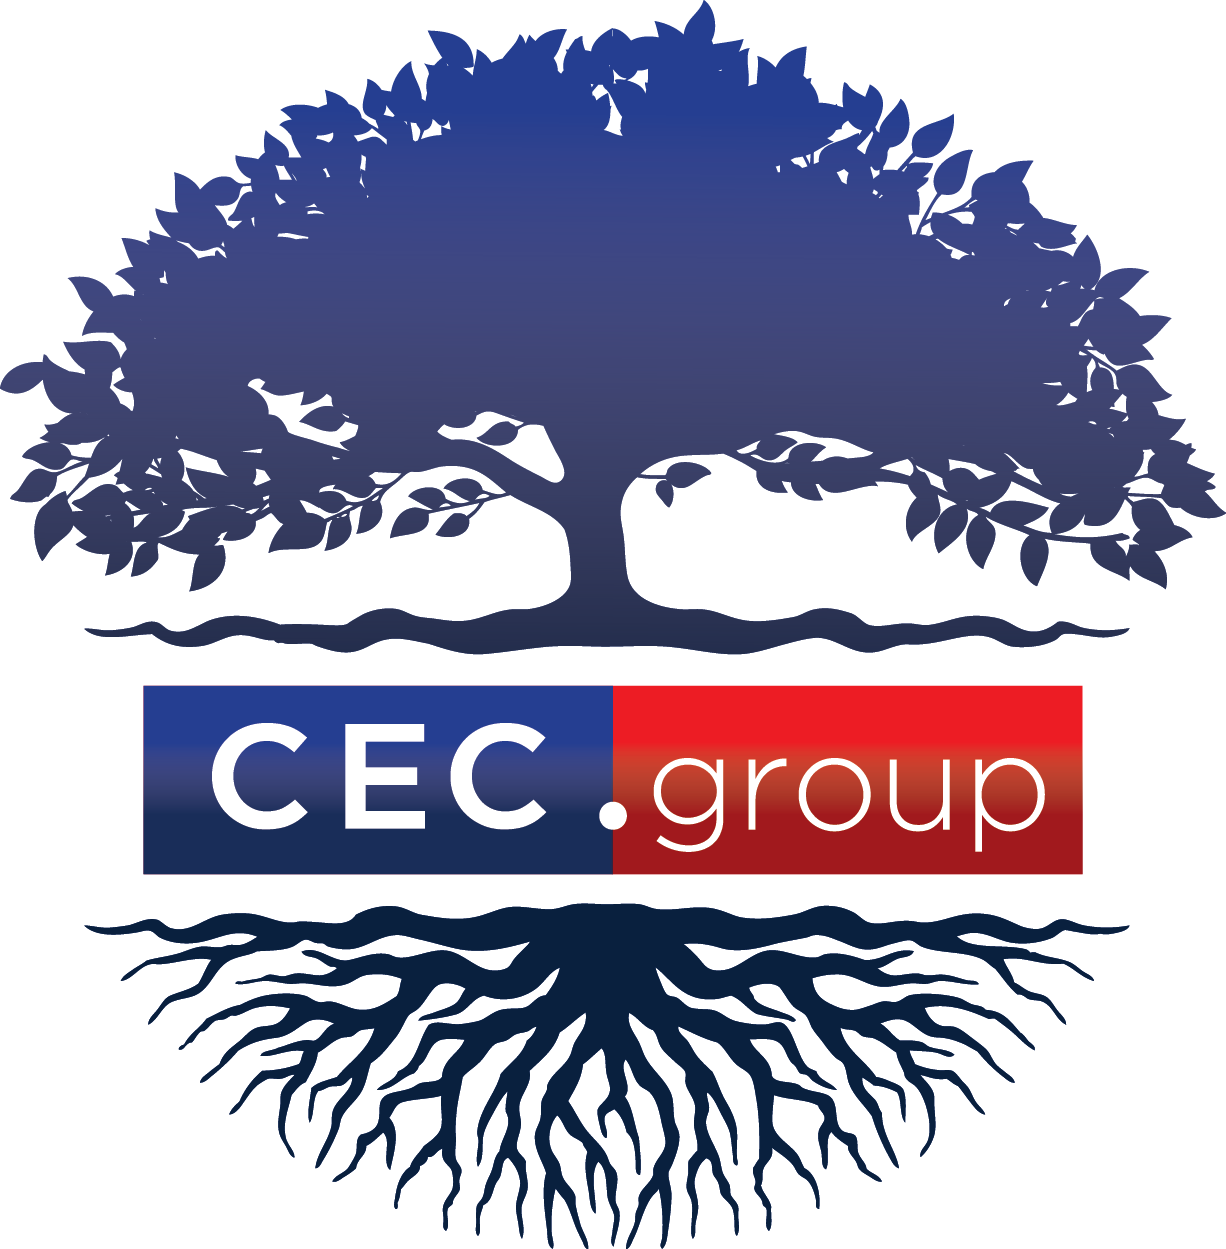 CEC.group albero def